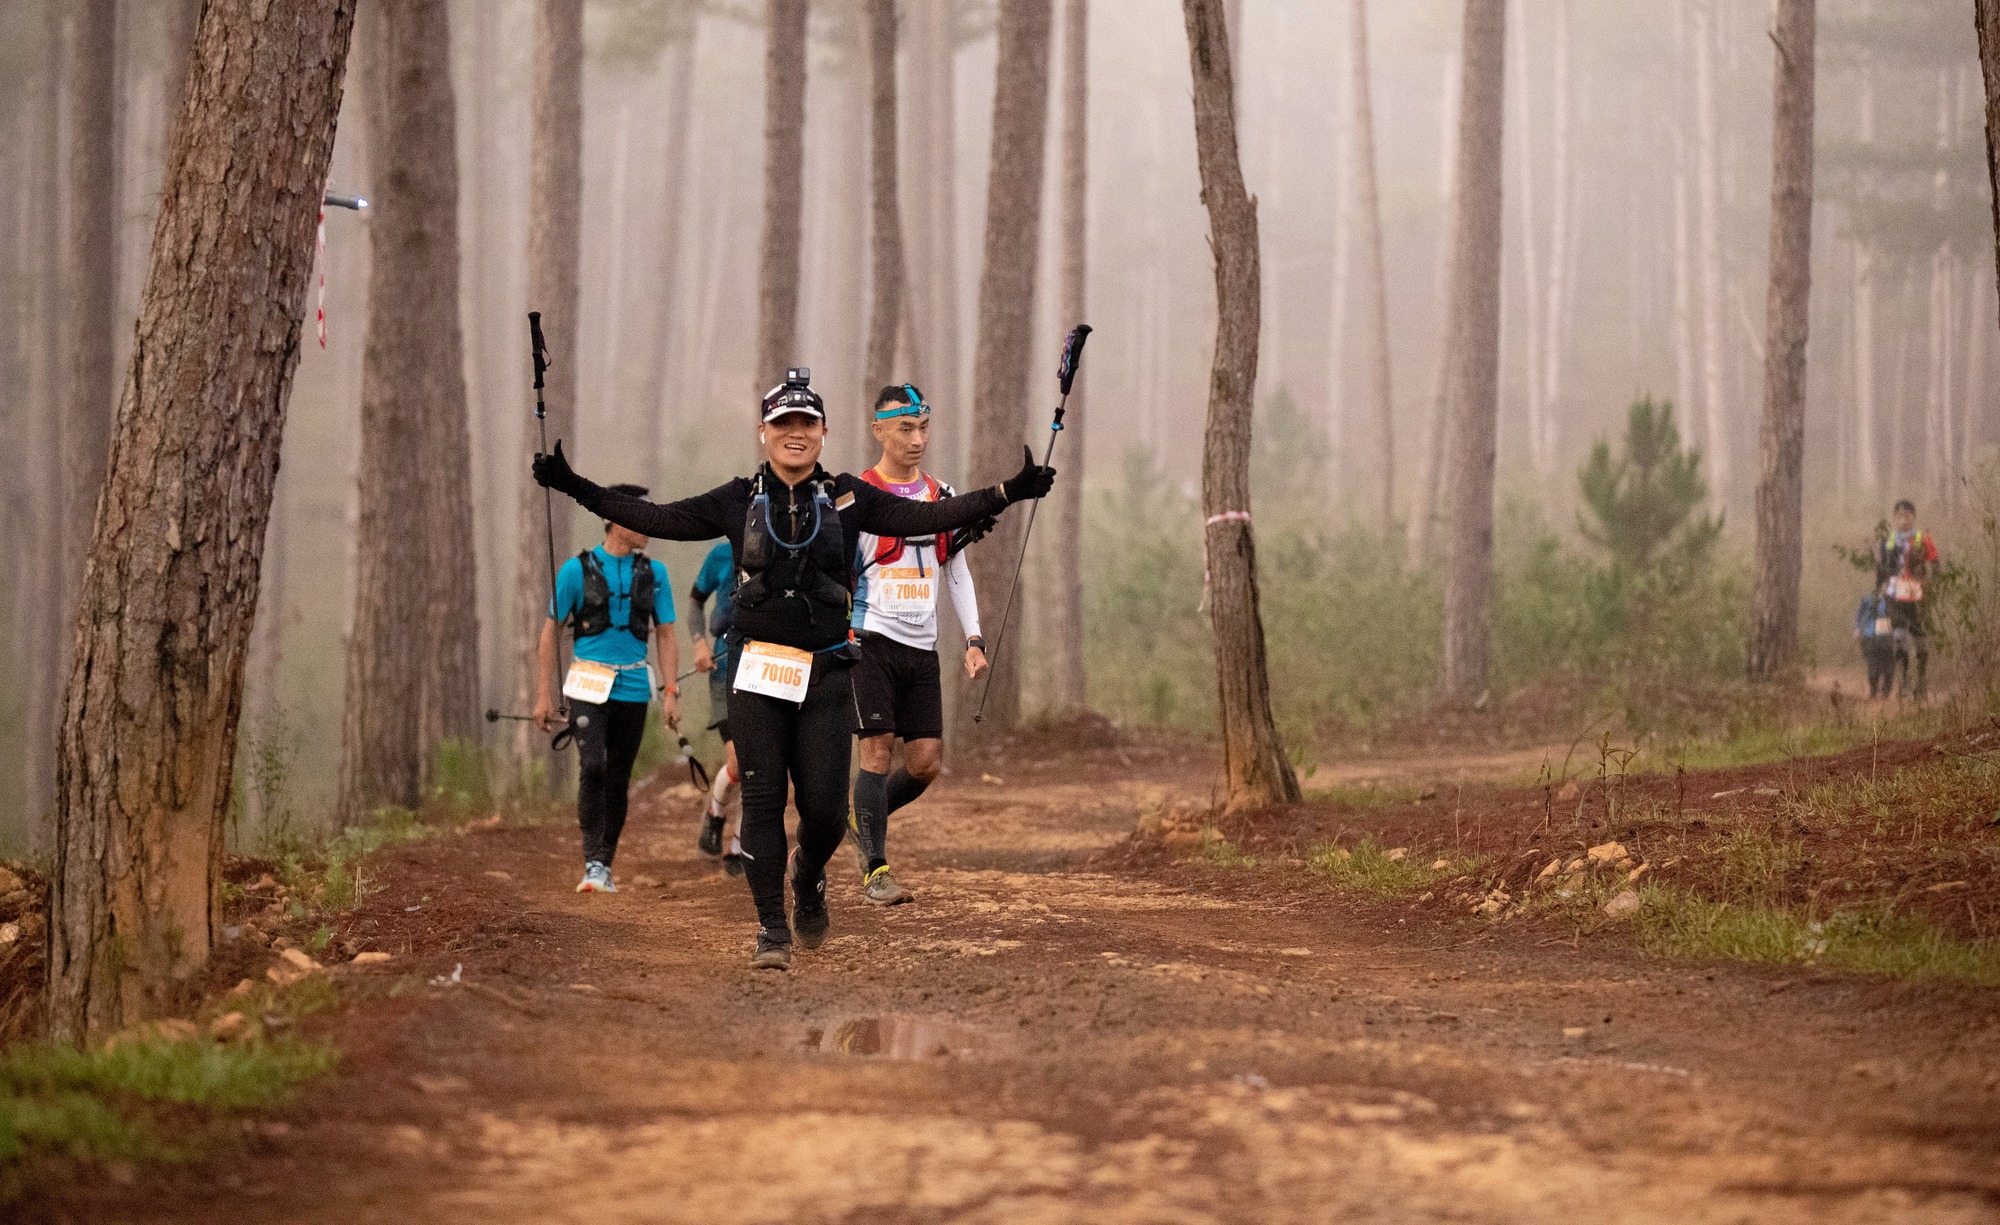 Hơn 6.000 vận động viên tham gia giải chạy địa hình lớn nhất phía Nam Dalat Ultra Trail tại Đà Lạt - Ảnh 3.